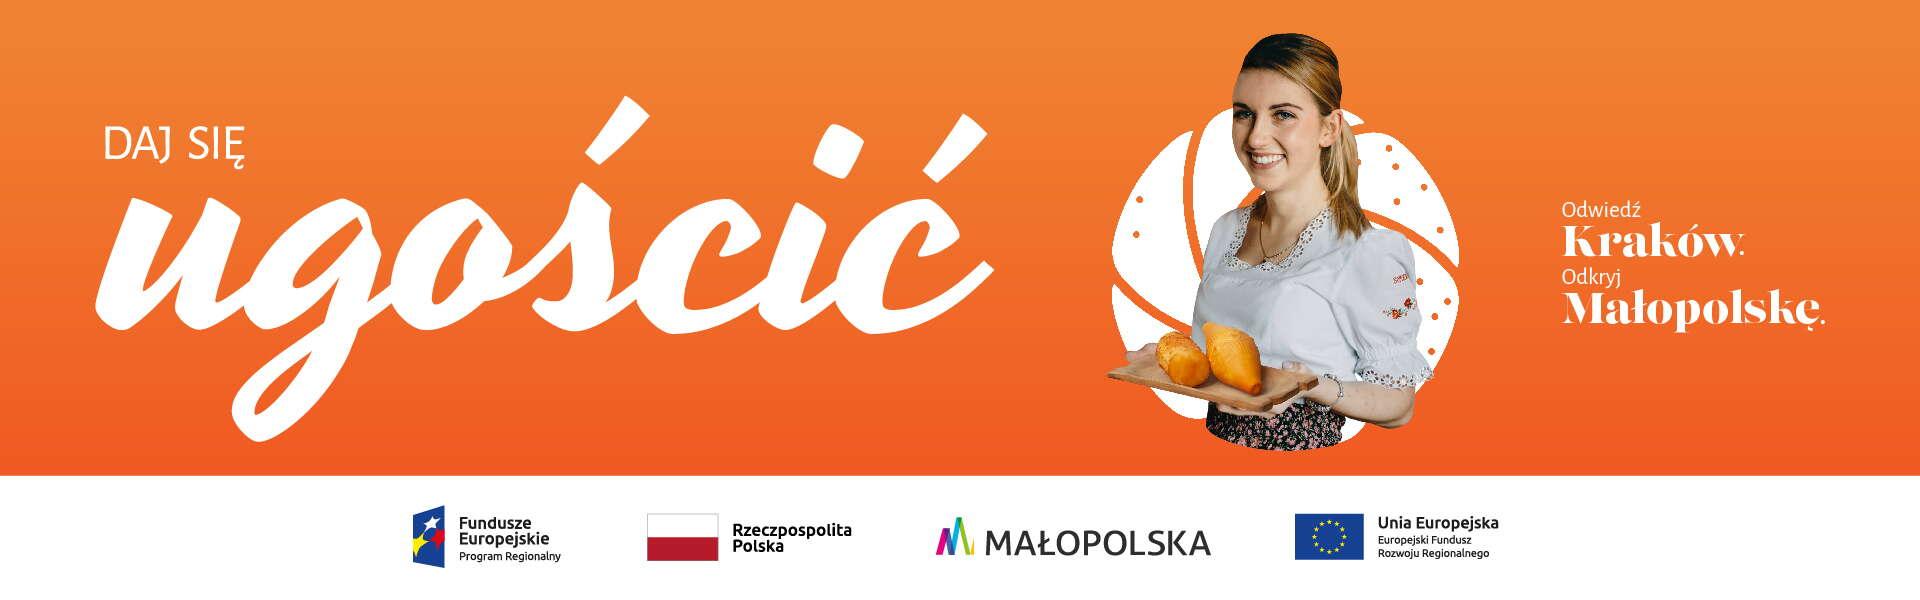 Baner kampanii promującej ofertę turystyczną regionu i jego stolicy: „Daj się ugościć! Odwiedź Kraków. Odkryj Małopolskę”